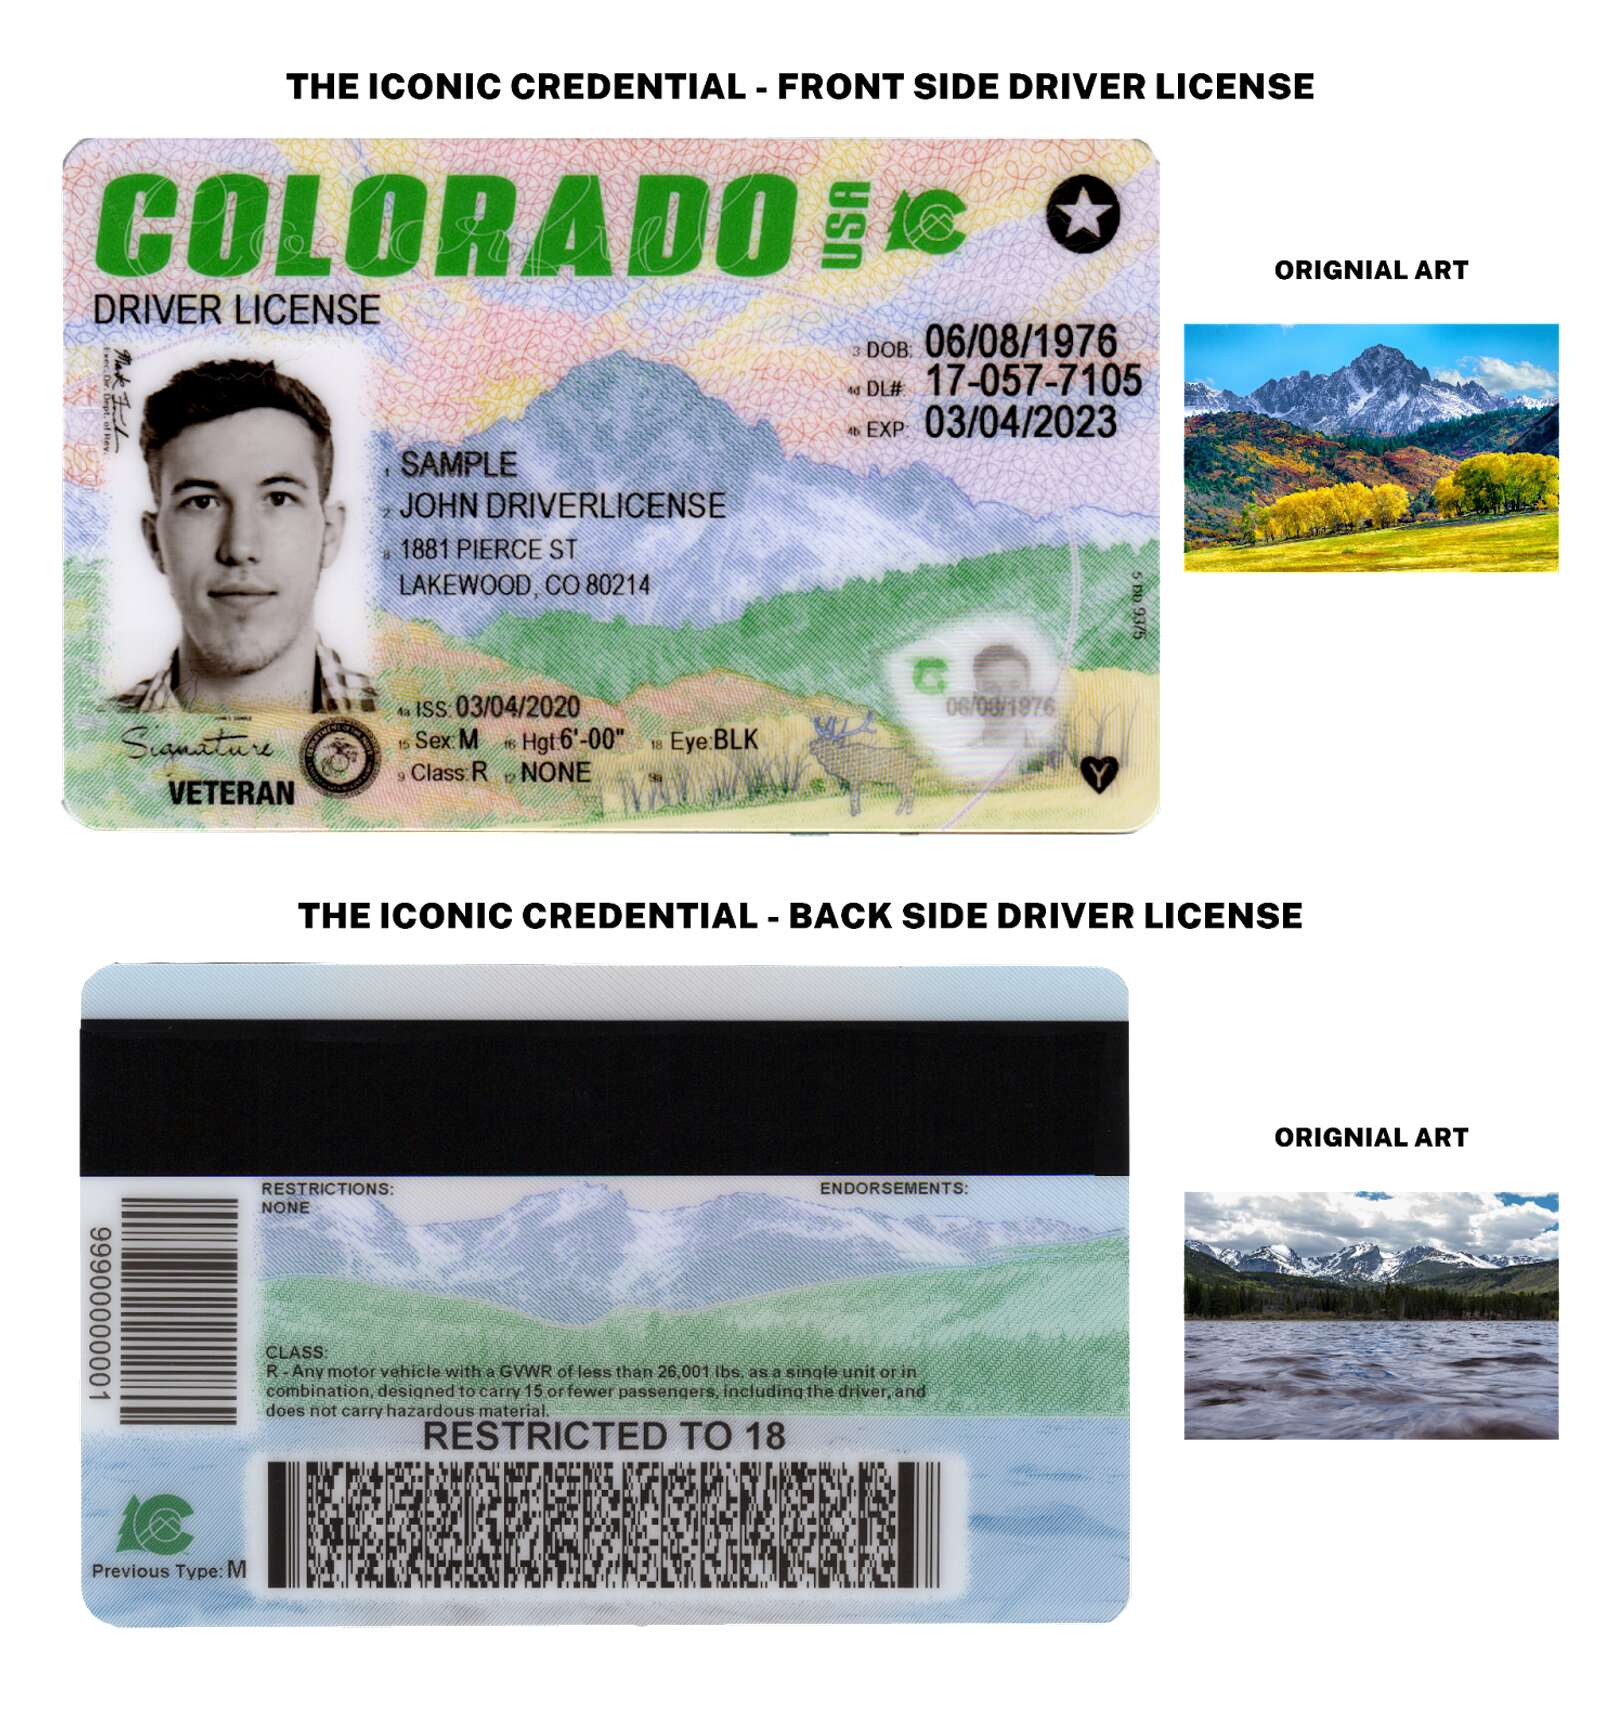 new driver's license colorado